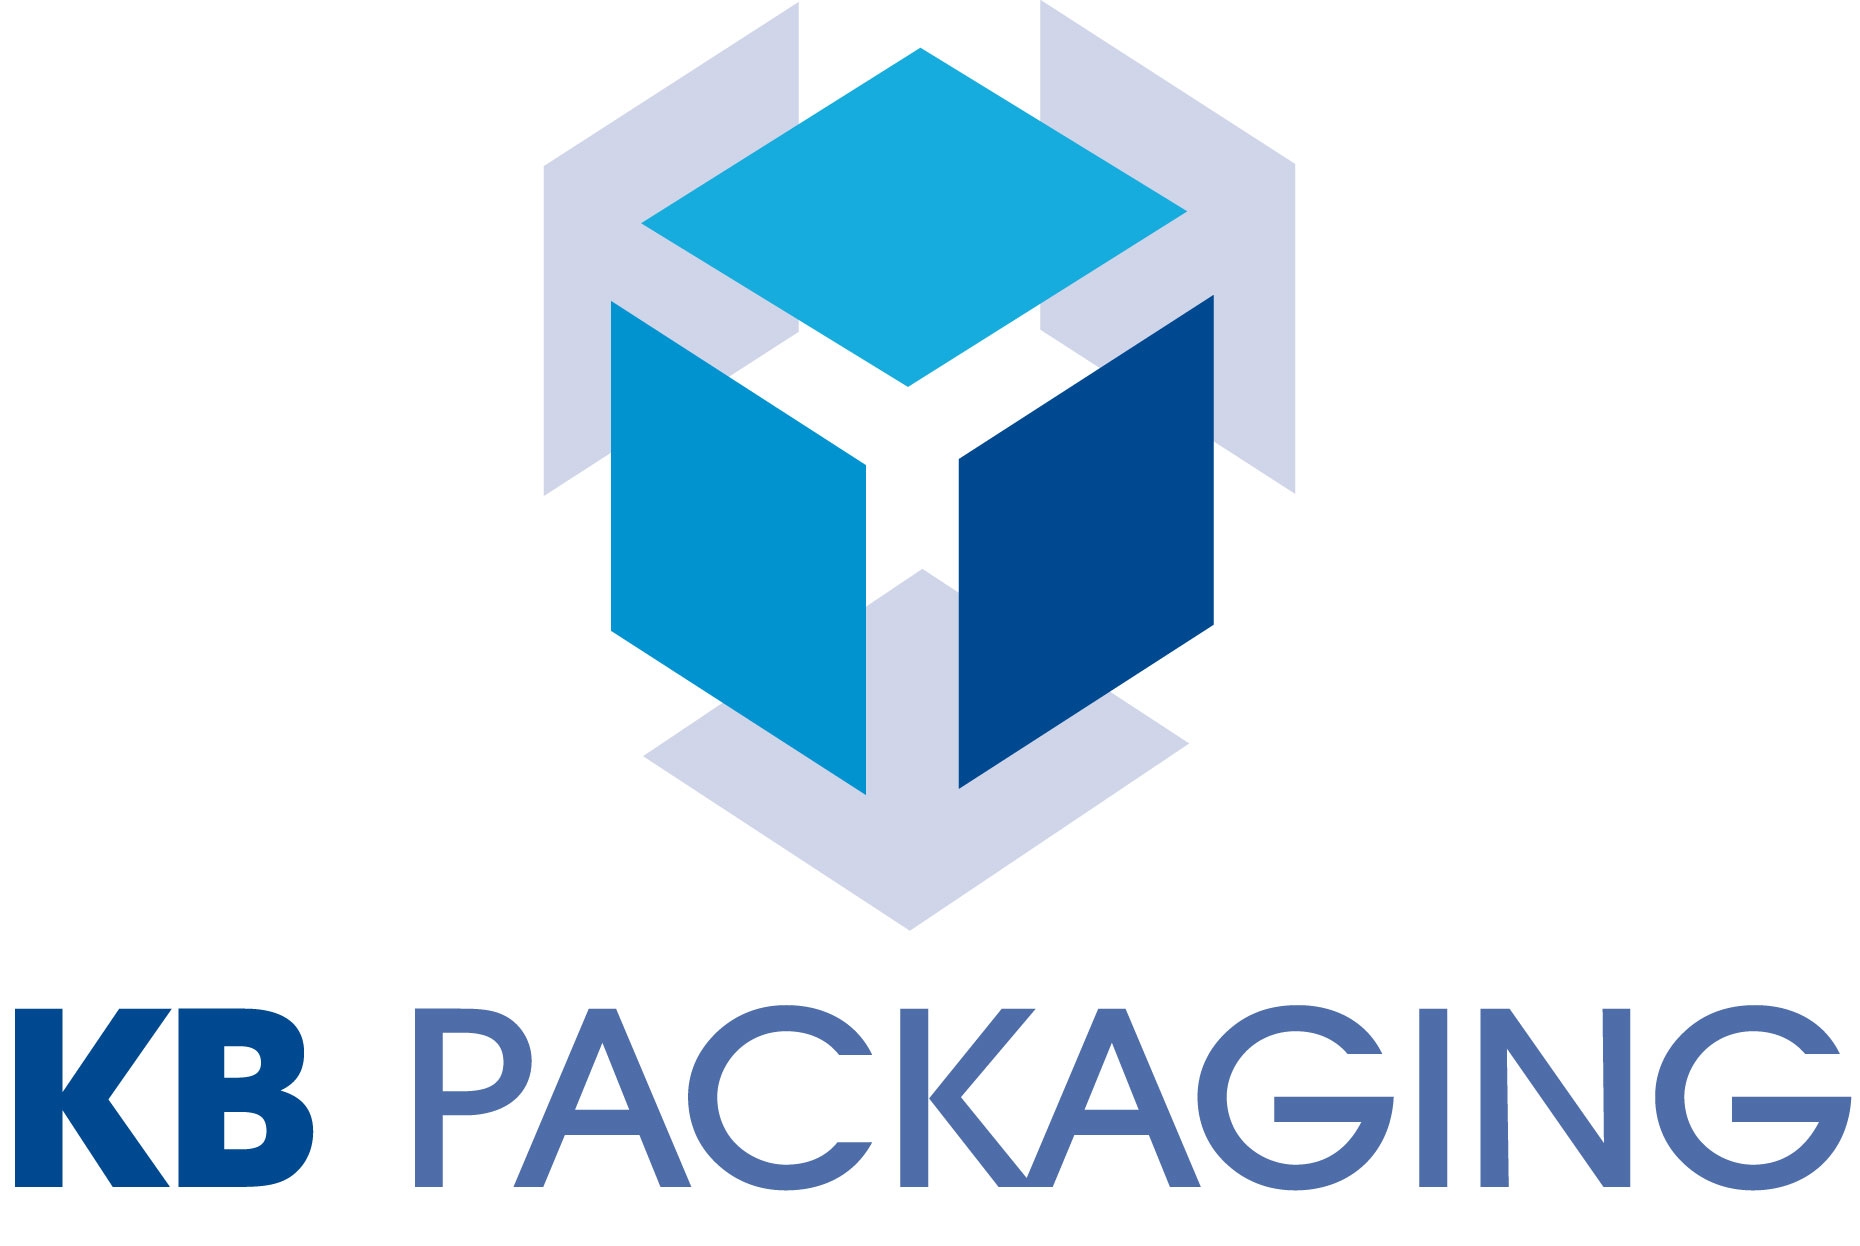 KB Packaging